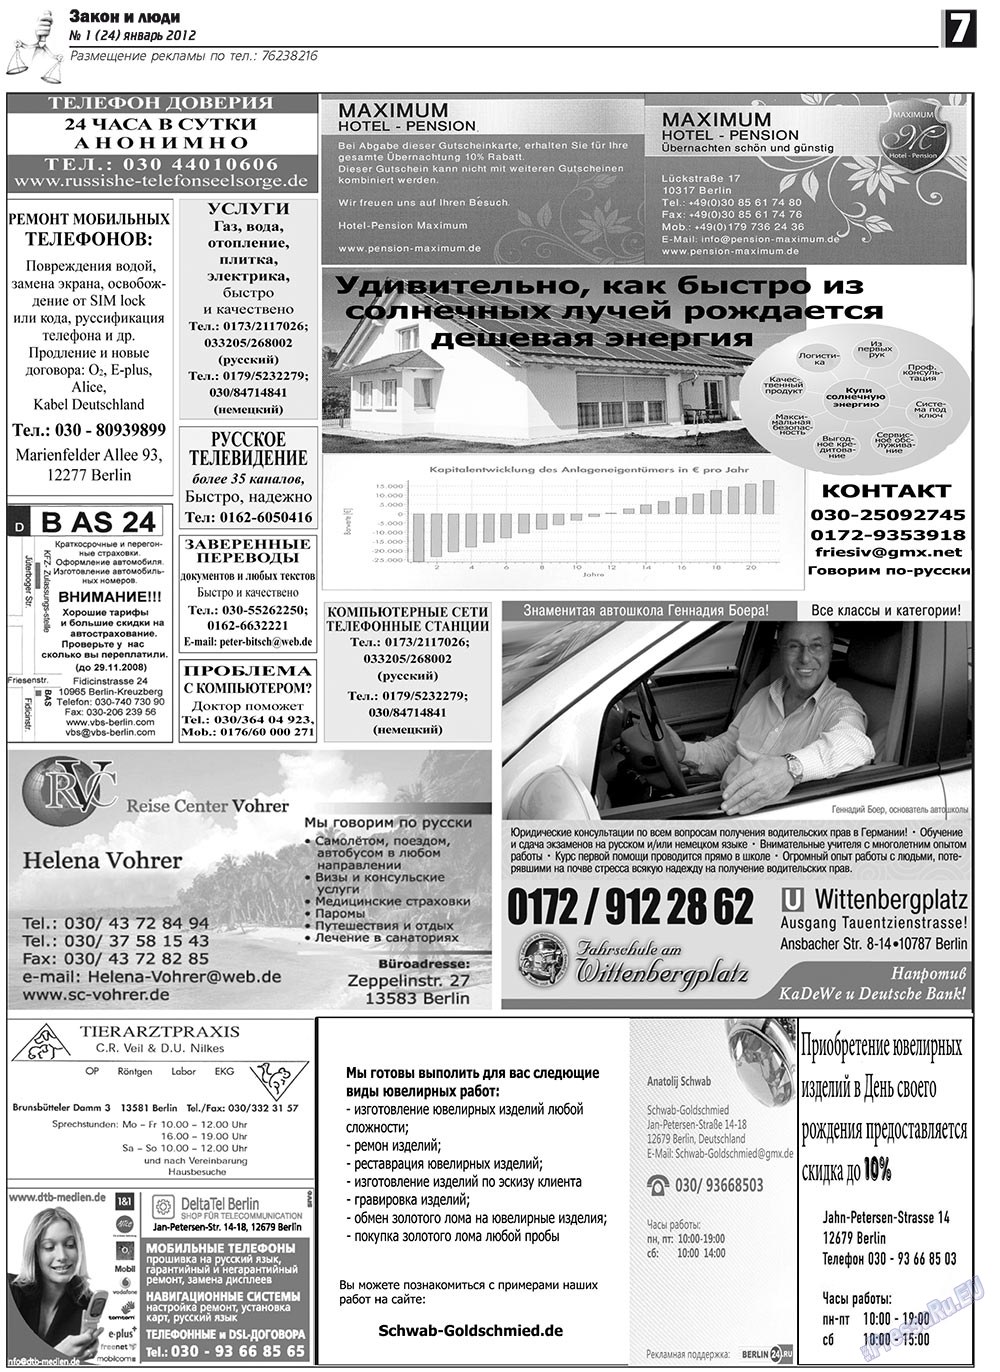 Закон и люди, газета. 2012 №1 стр.7